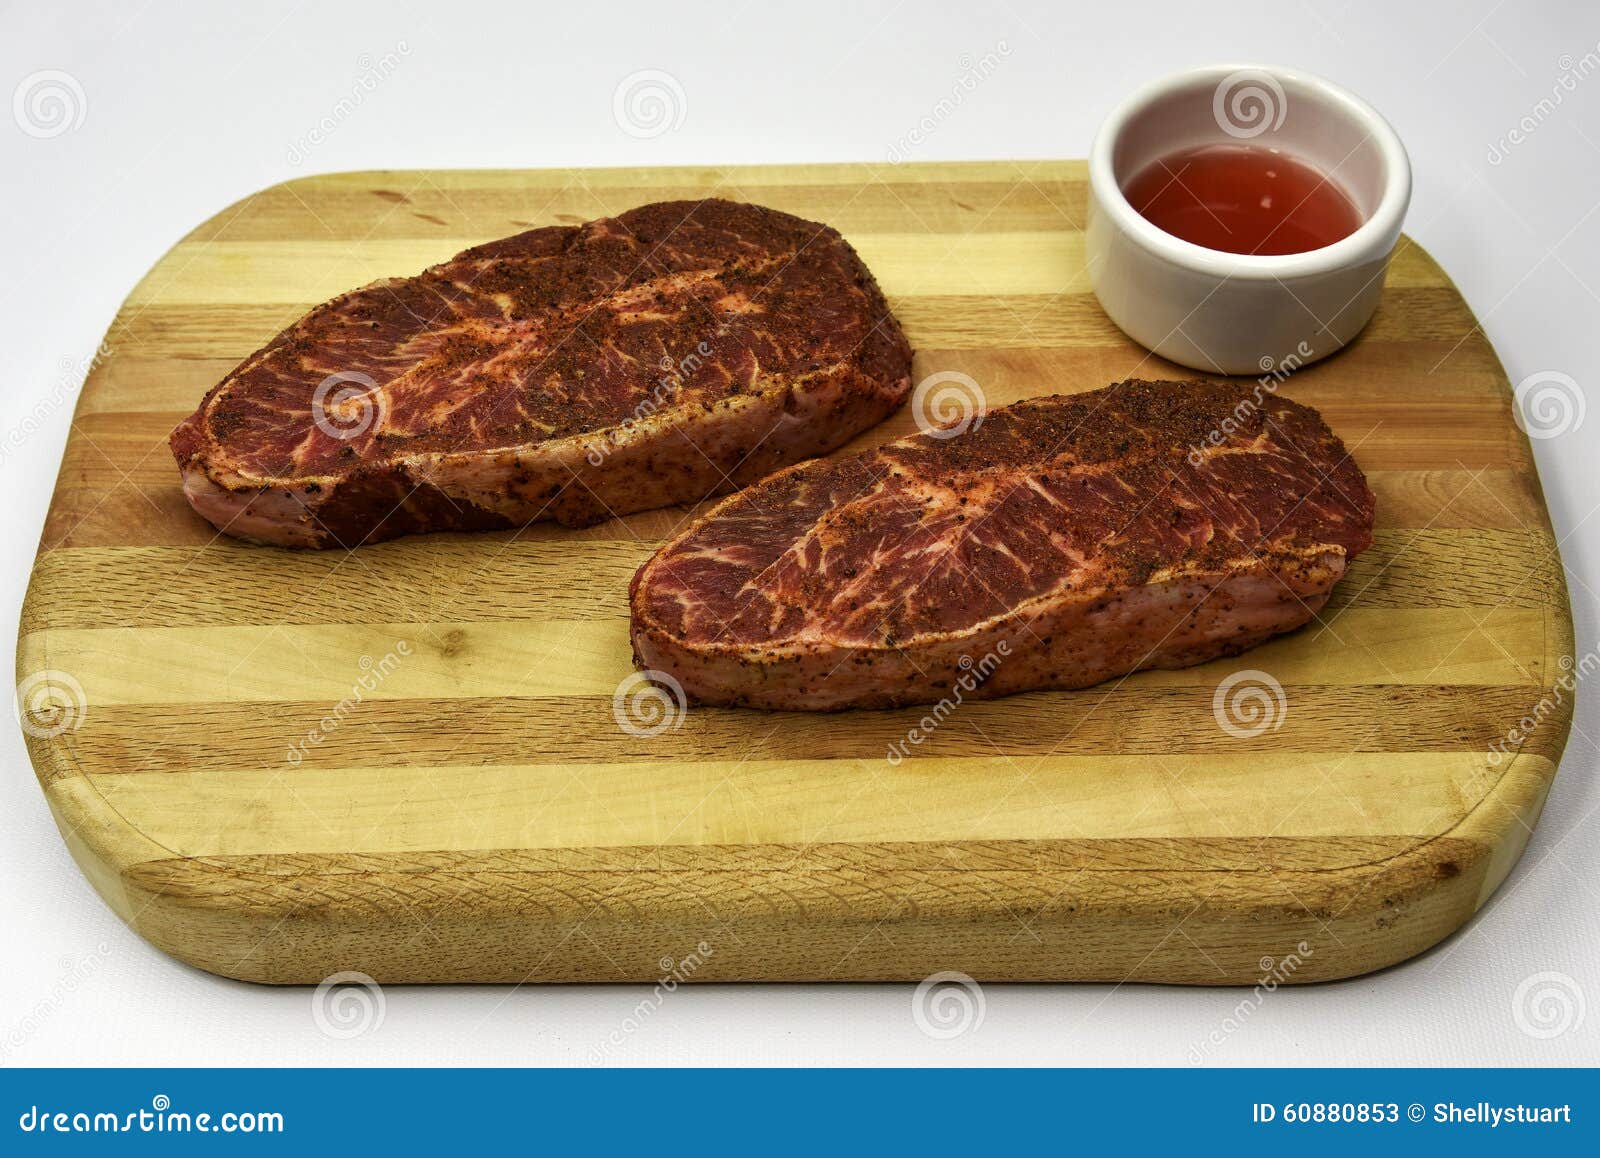 13,13 Flat Iron Steak Photos - Free & Royalty-Free Stock Photos